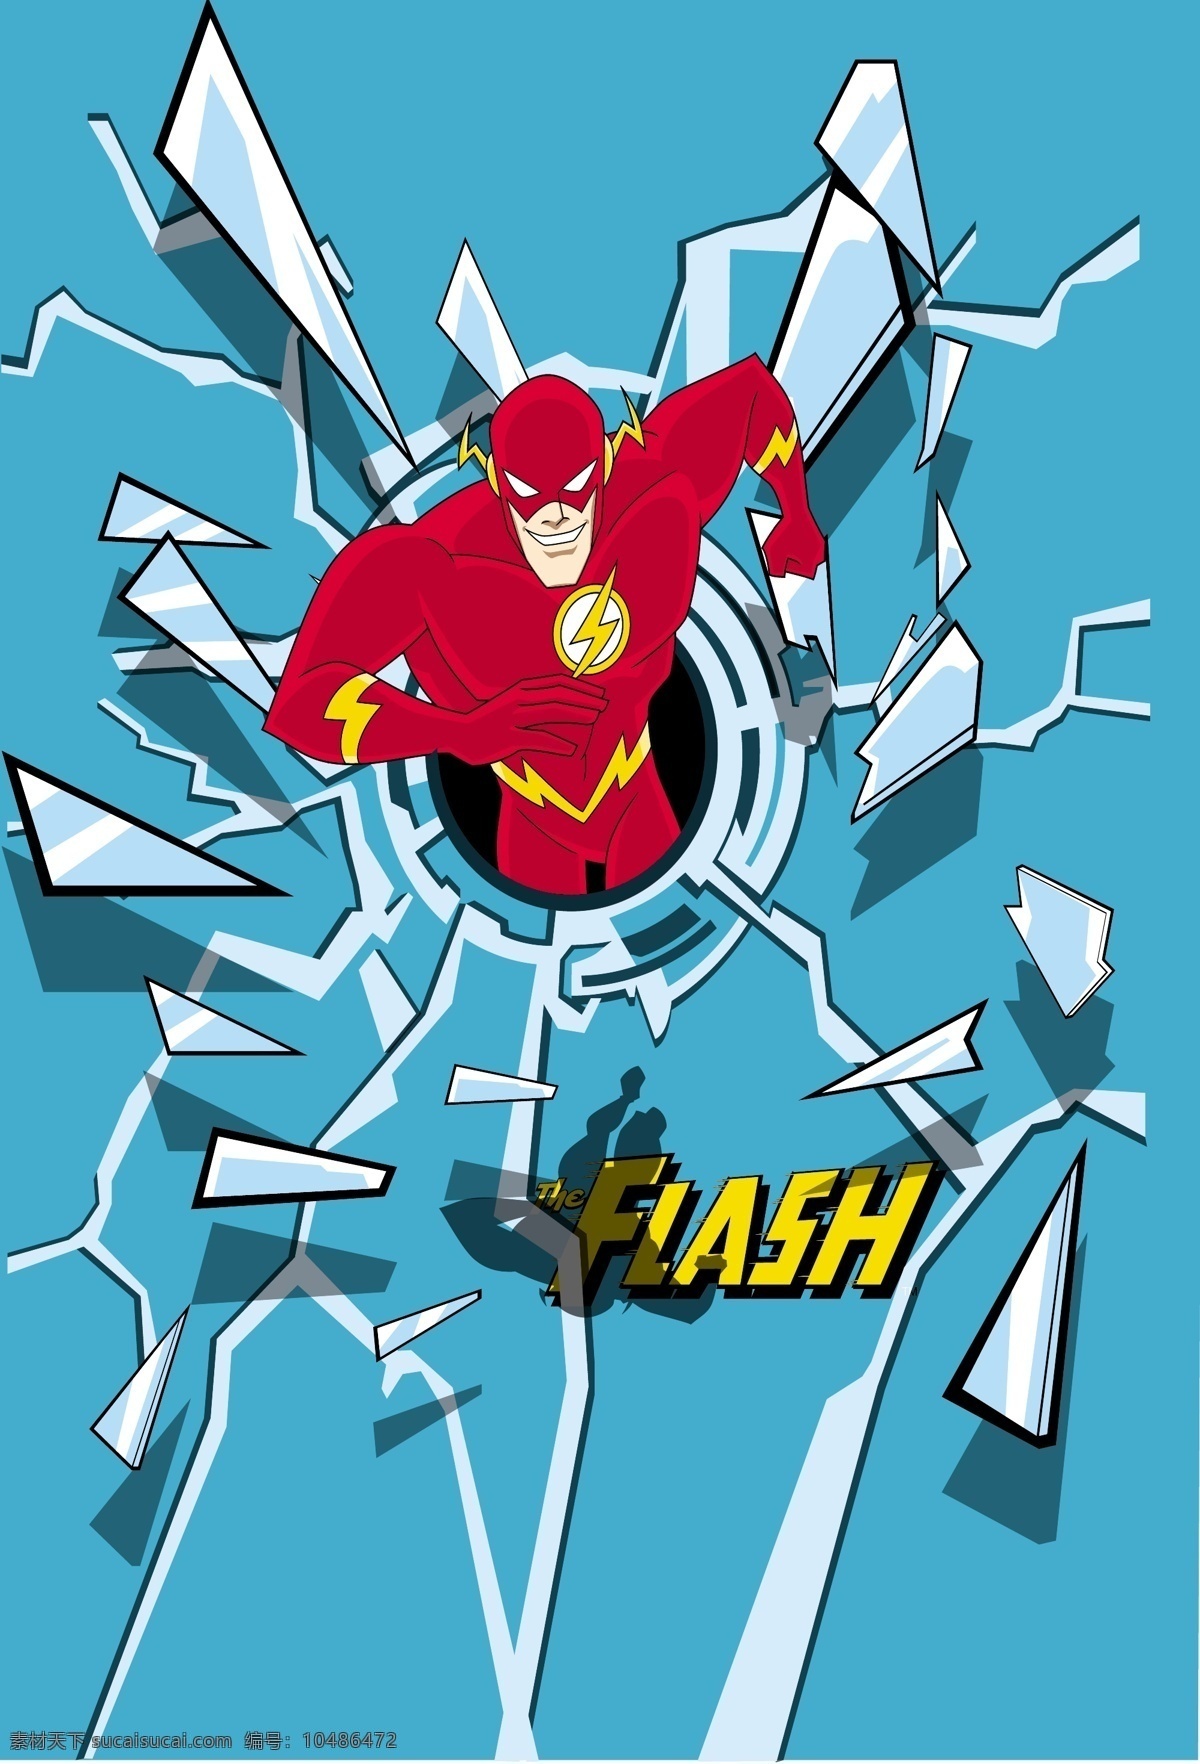 闪电侠 超人 superman 蝙蝠侠 batman flash 华纳 dc漫画 超级英雄 英雄联盟 卡通形象 其他人物 矢量人物 矢量 超人英雄